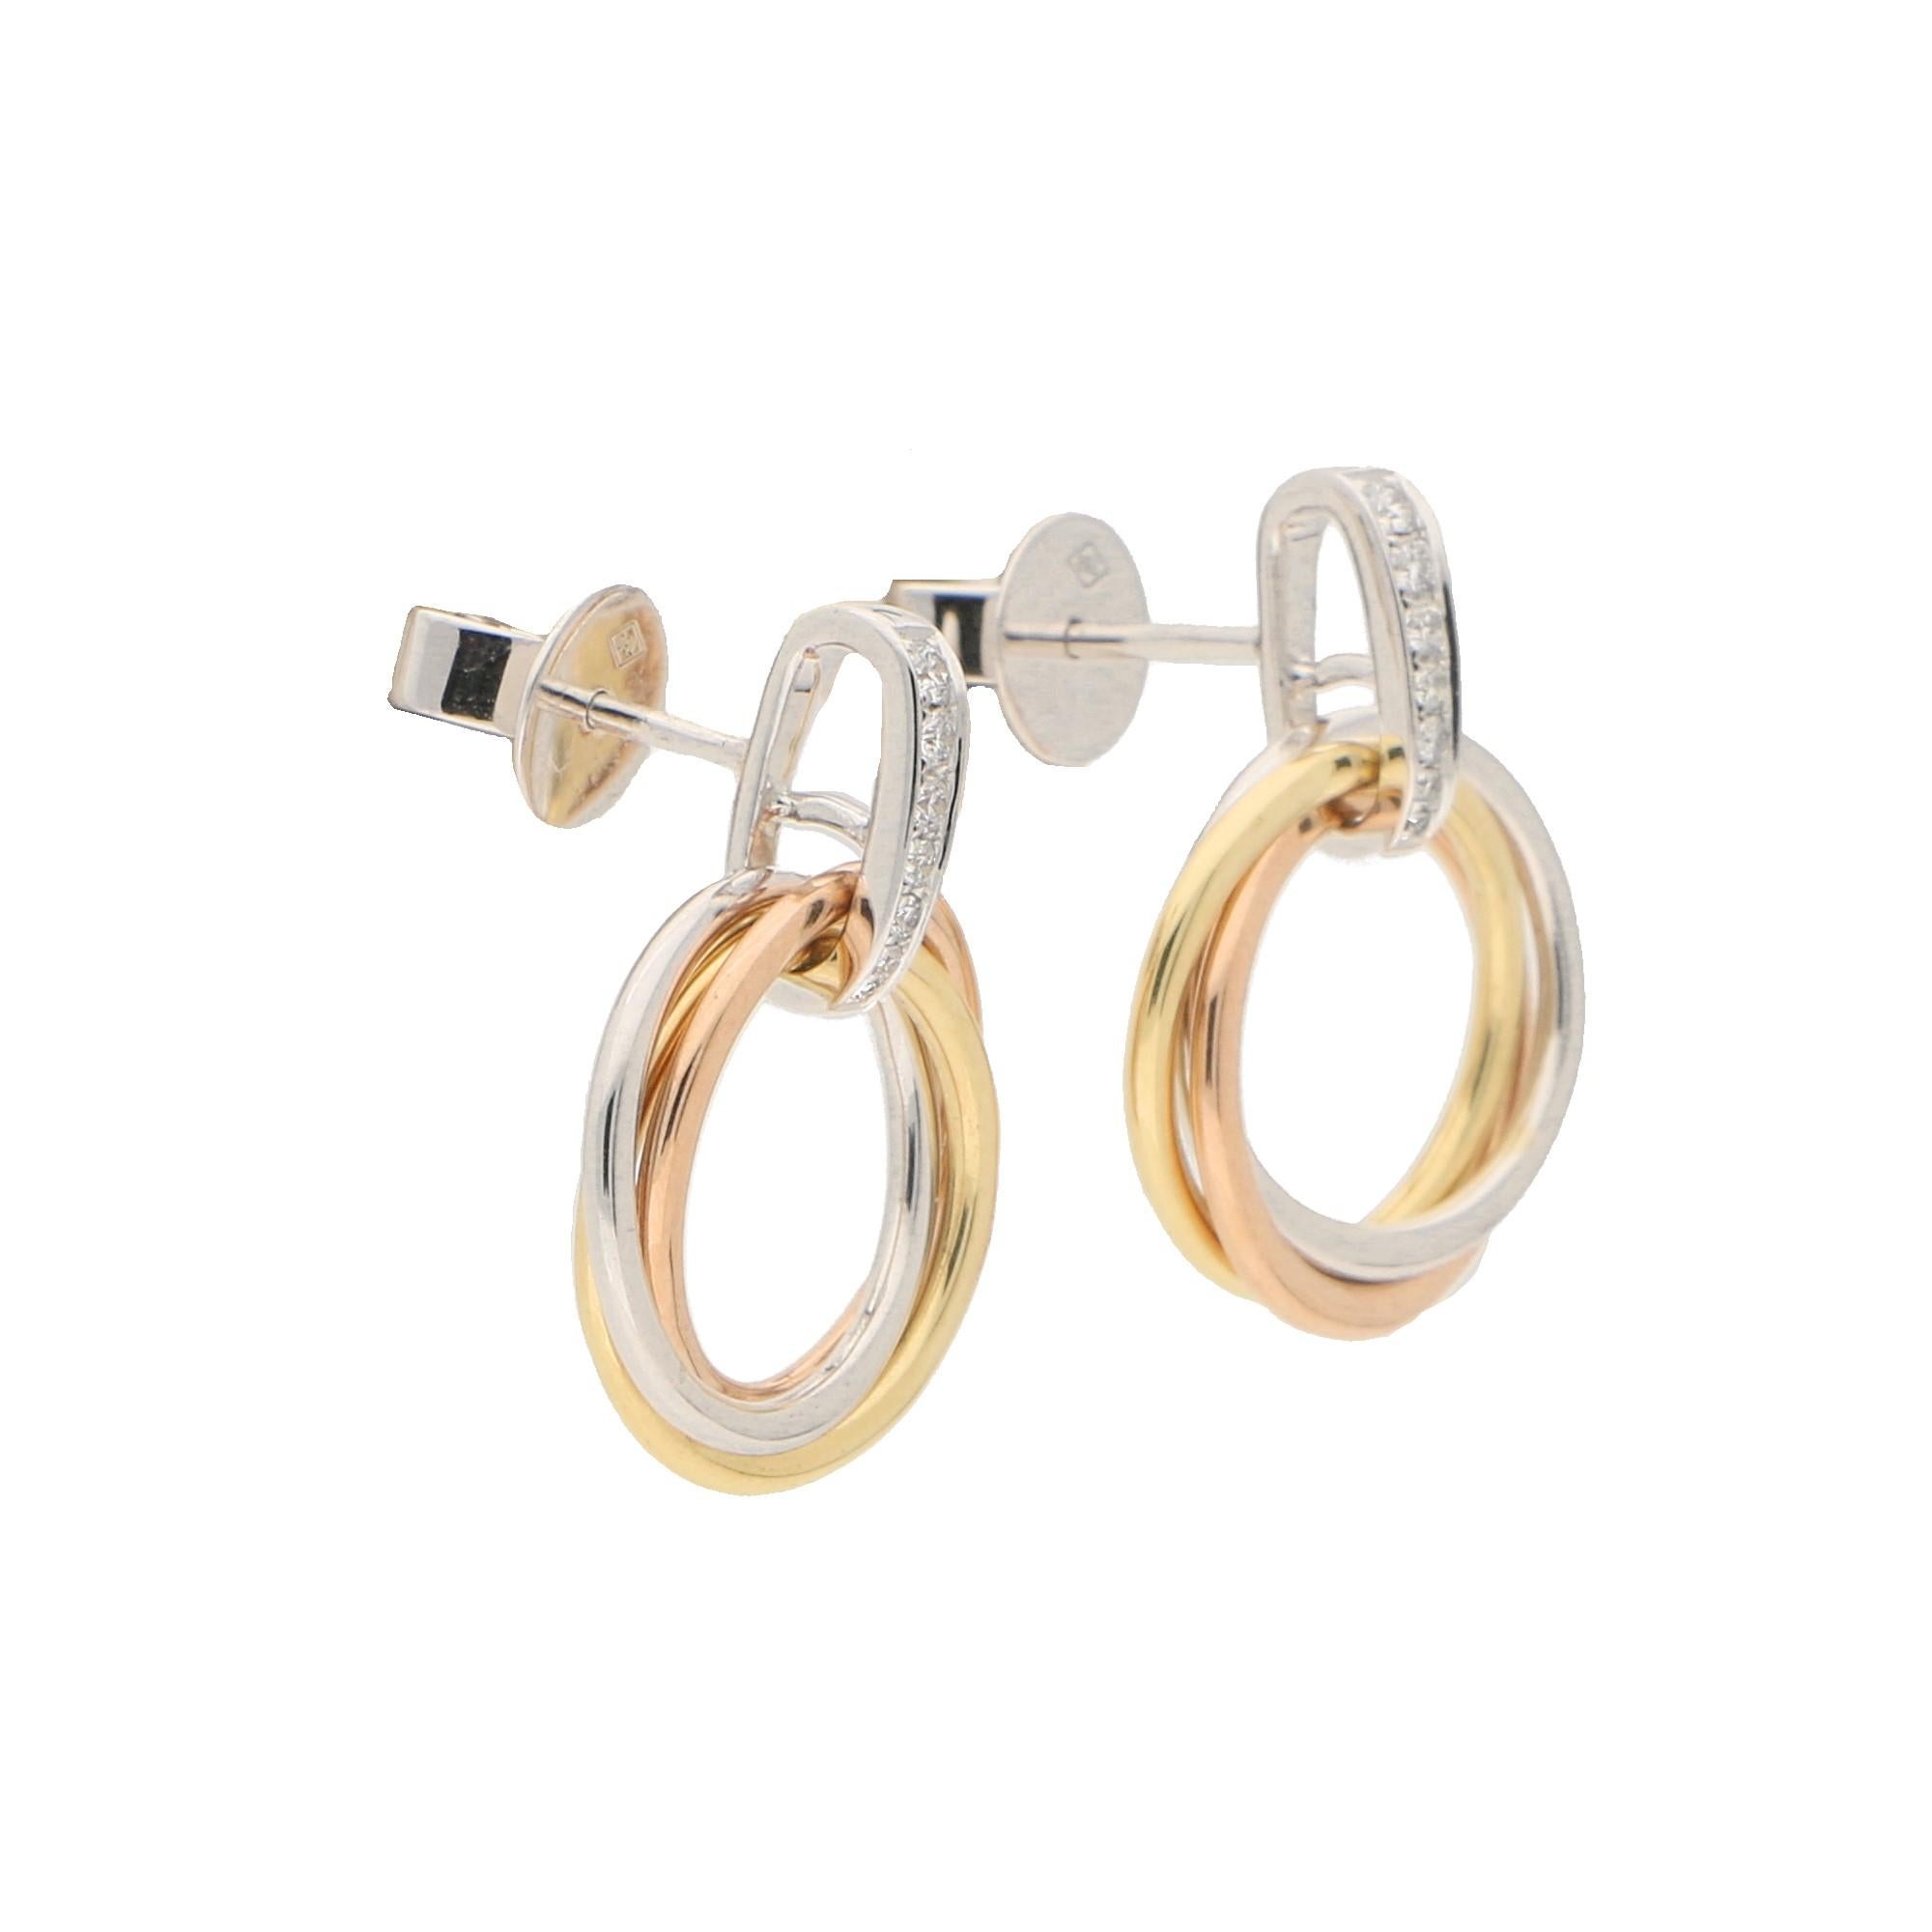 Ein hübsches kleines Paar Trinity-Ohrringe im modernen Stil aus 18 Karat Gelb-, Rosé- und Weißgold. 

Die Ohrringe bestehen aus drei ineinander verschlungenen dreifarbigen Goldreifen. Diese Reifchen werden durch einen pavébesetzten Weißgold-Reif in